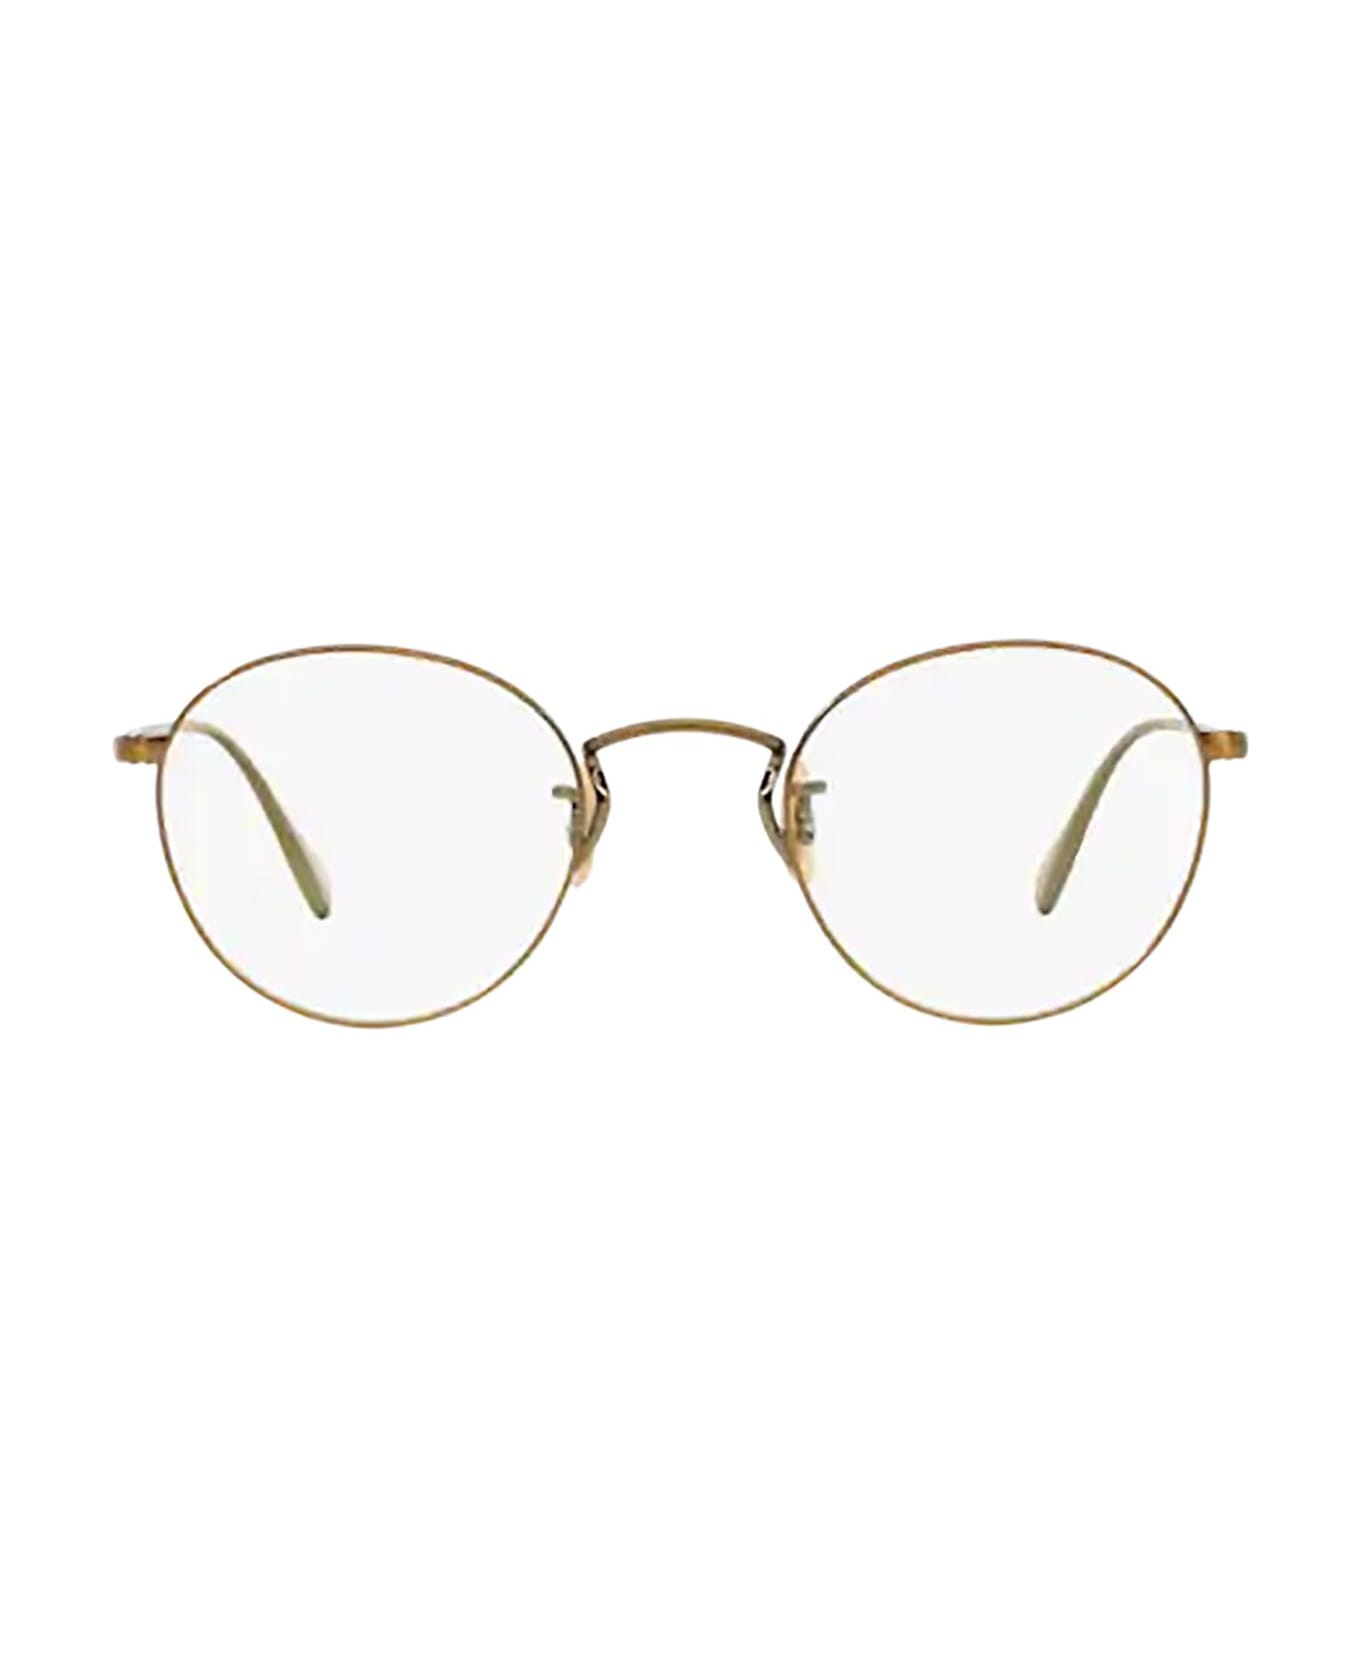 Oliver Peoples Ov1186 Antique Gold Glasses - Antique Gold アイウェア